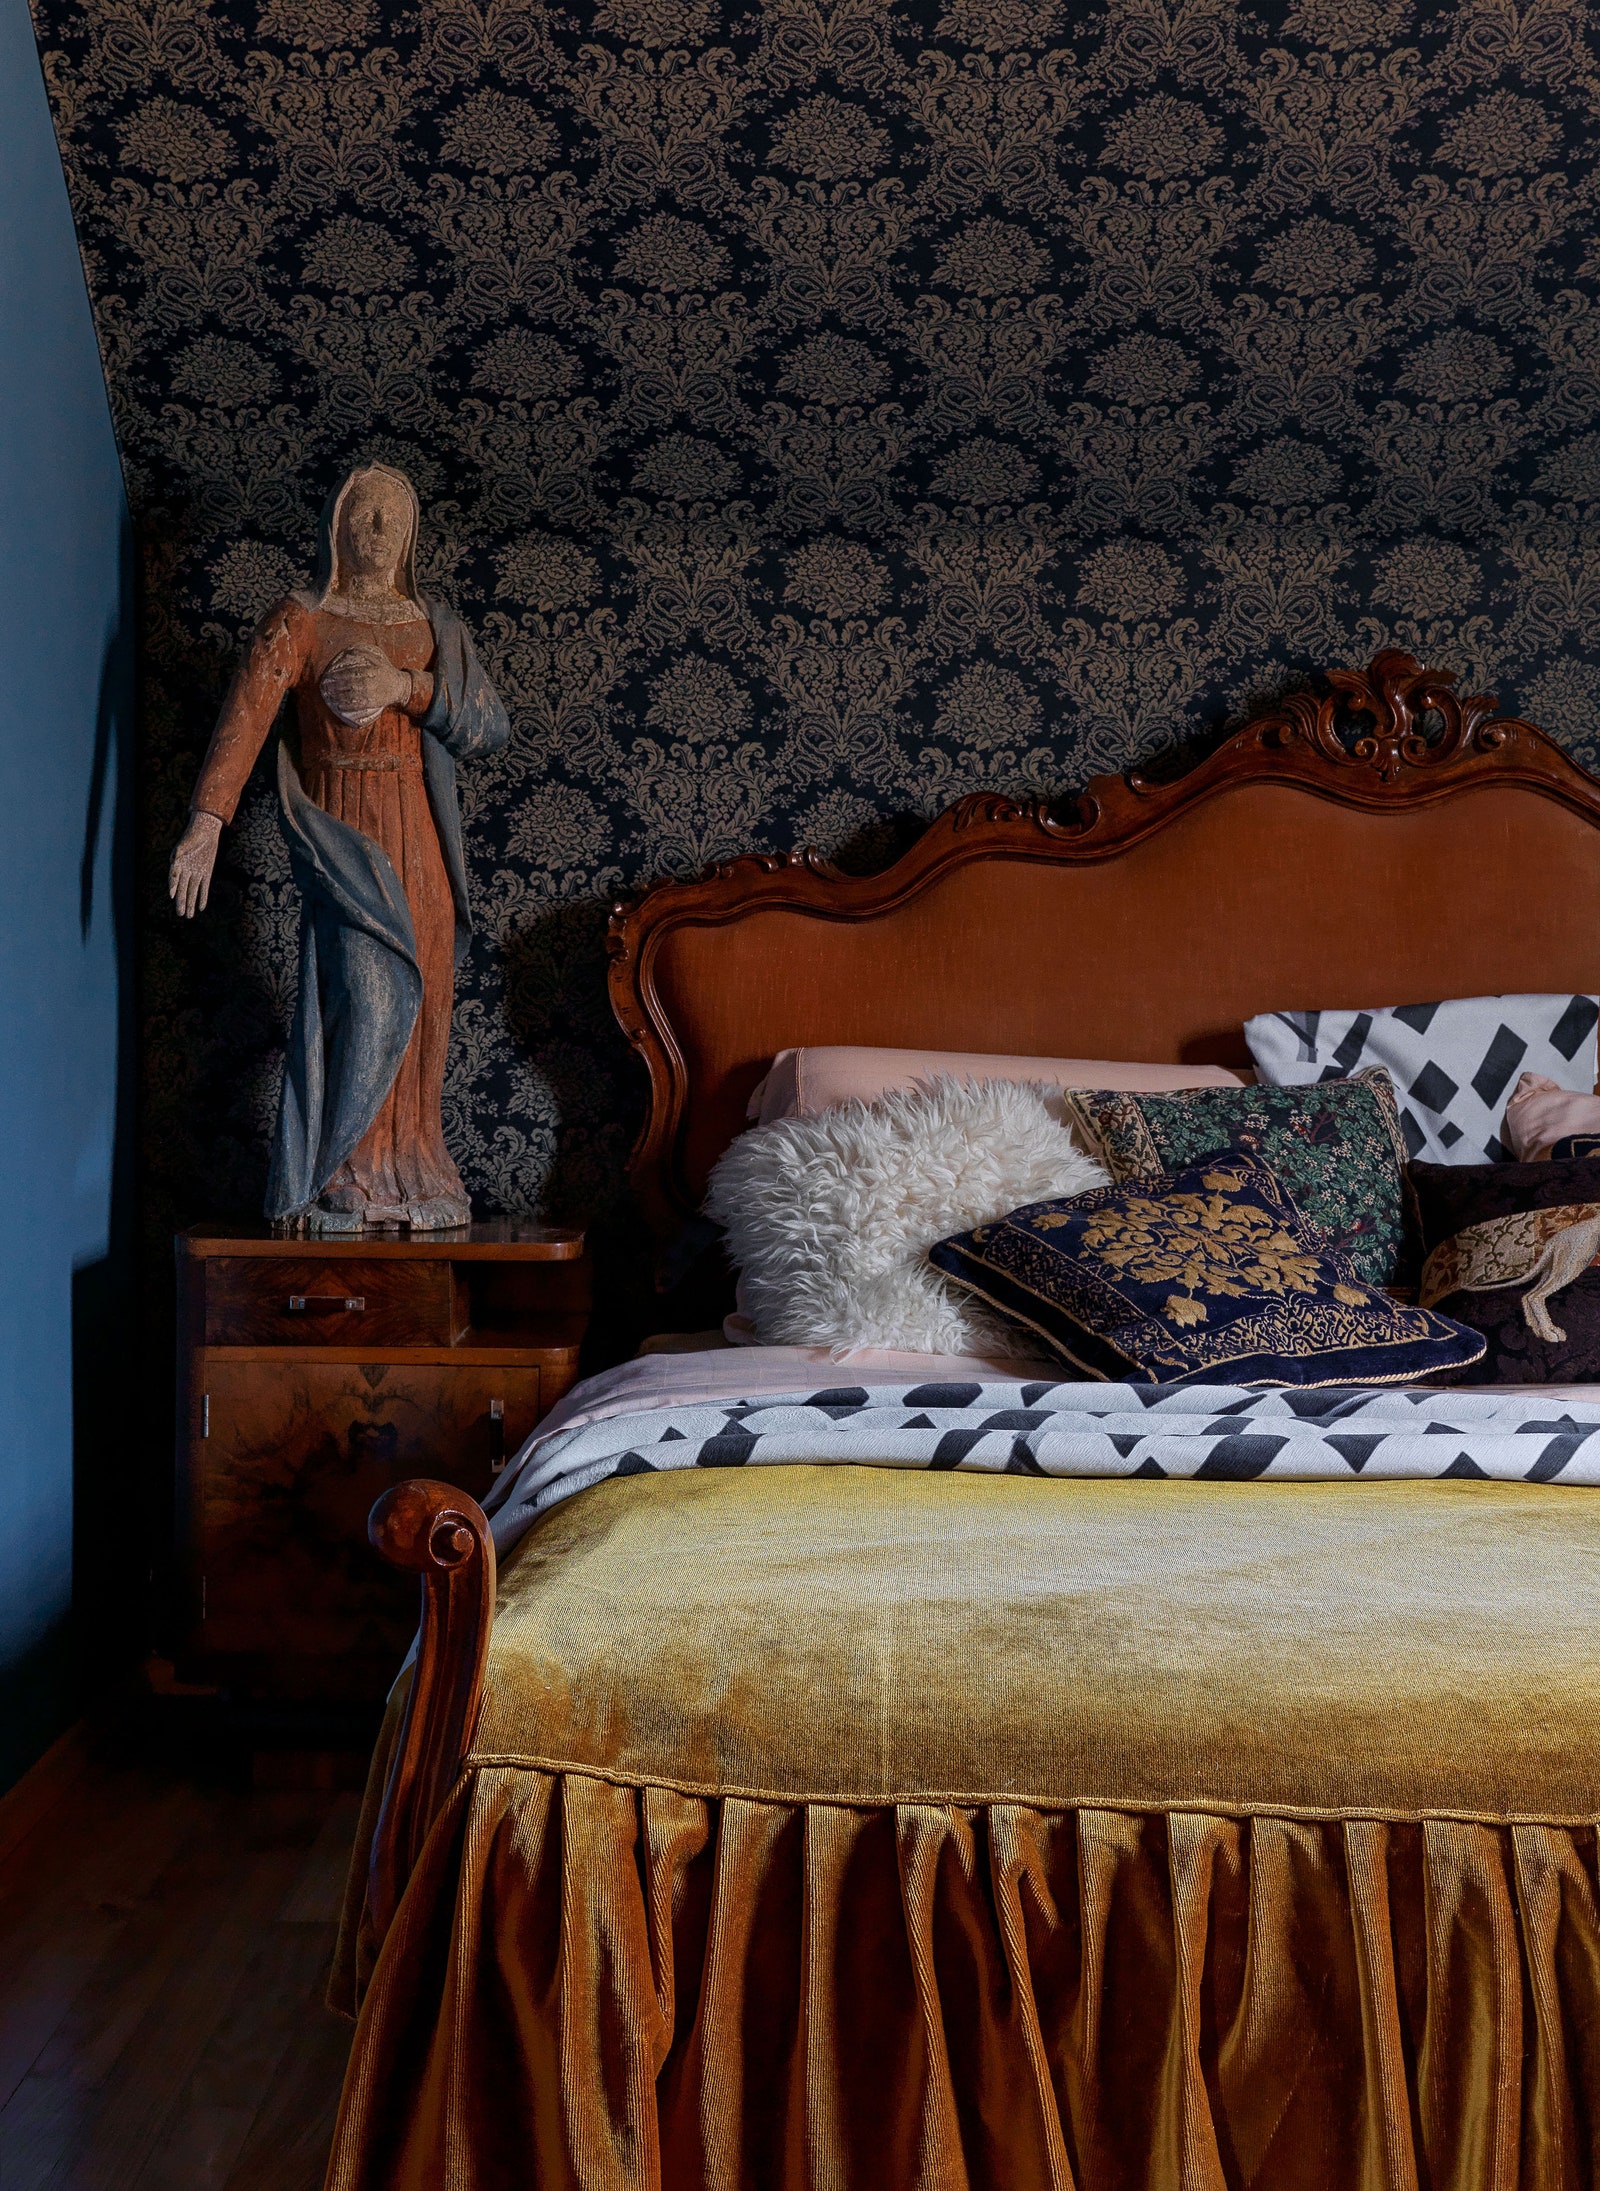 Комплект венской мебели — кровать и тумбочка из вишни — куплен в антикварном ­магазине в Словении. Стена обтя­нута...